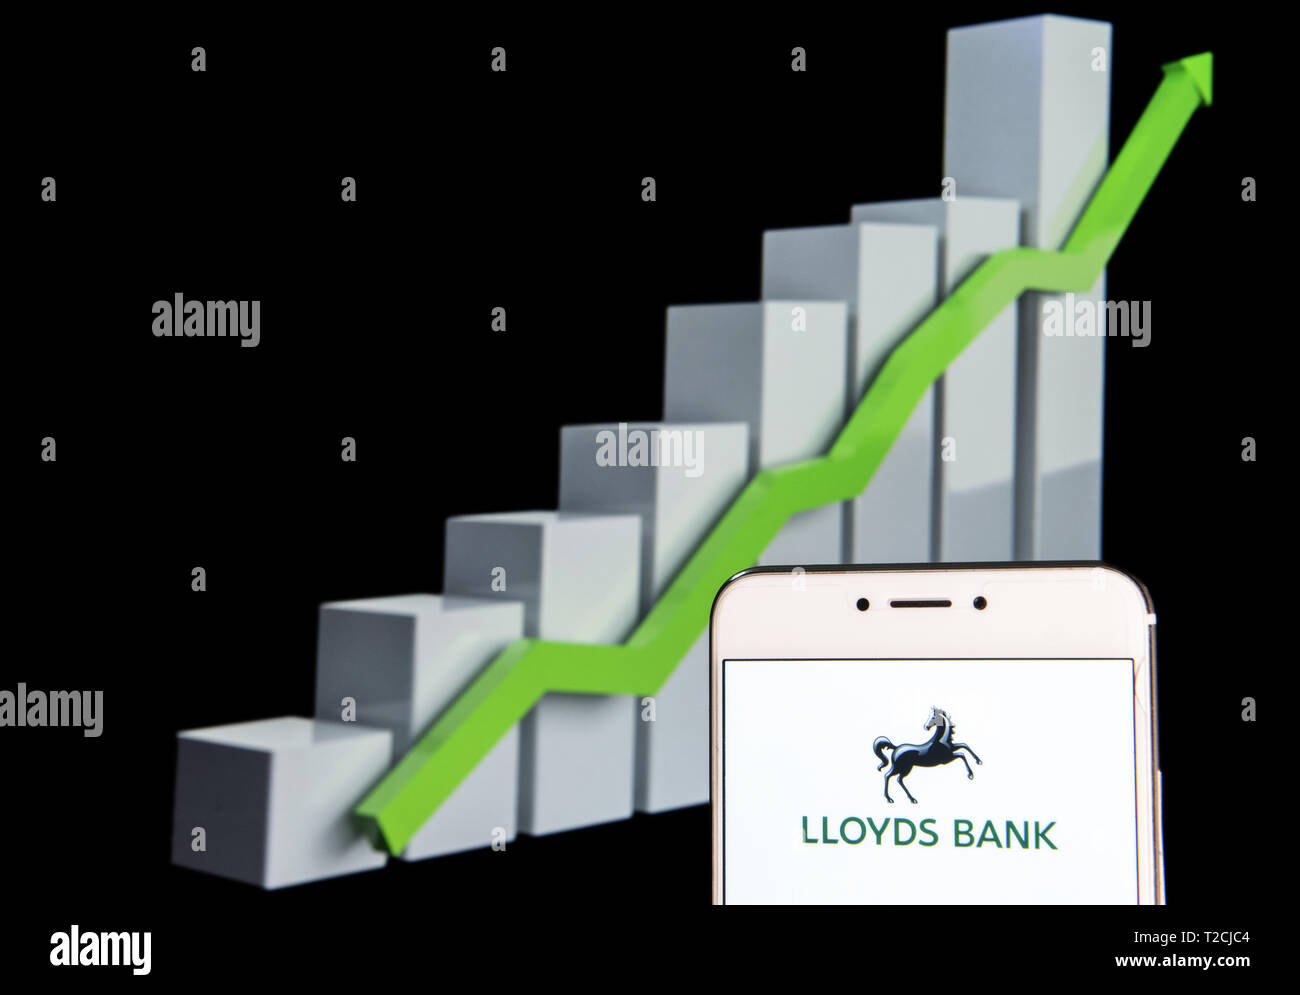 Lloyds Bank Stock Chart